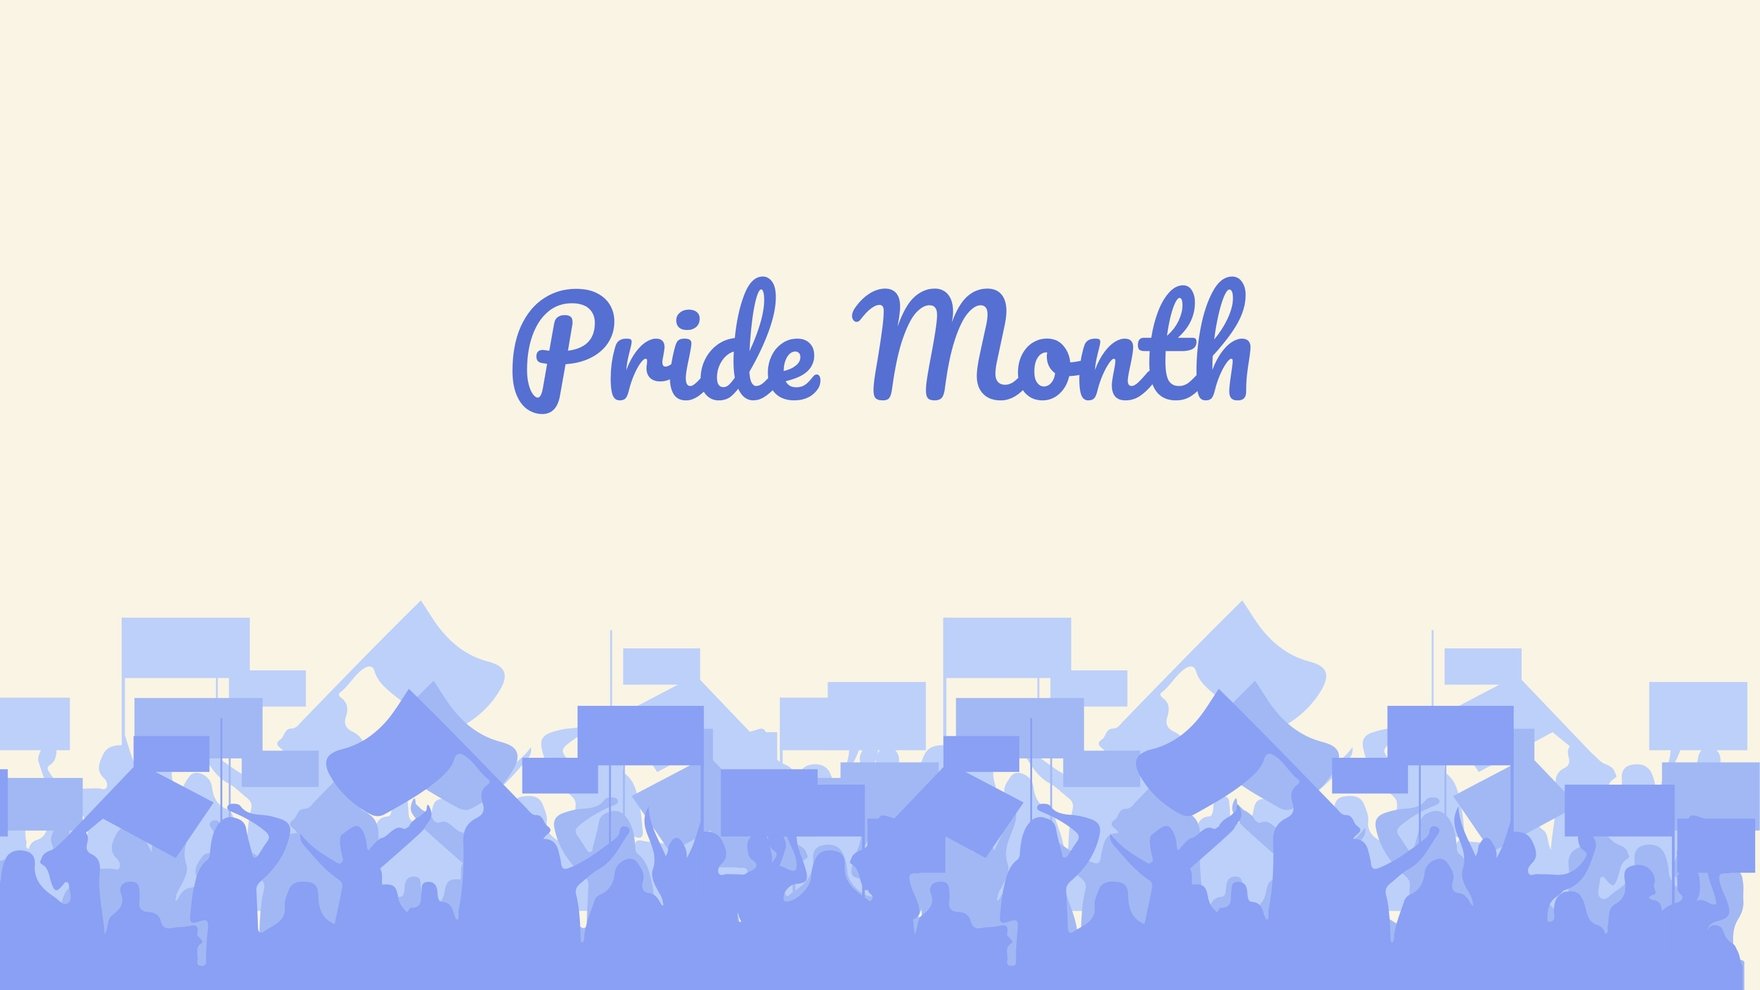 Free Pride Month Banner Background in PDF, Illustrator, PSD, EPS, SVG, PNG, JPEG